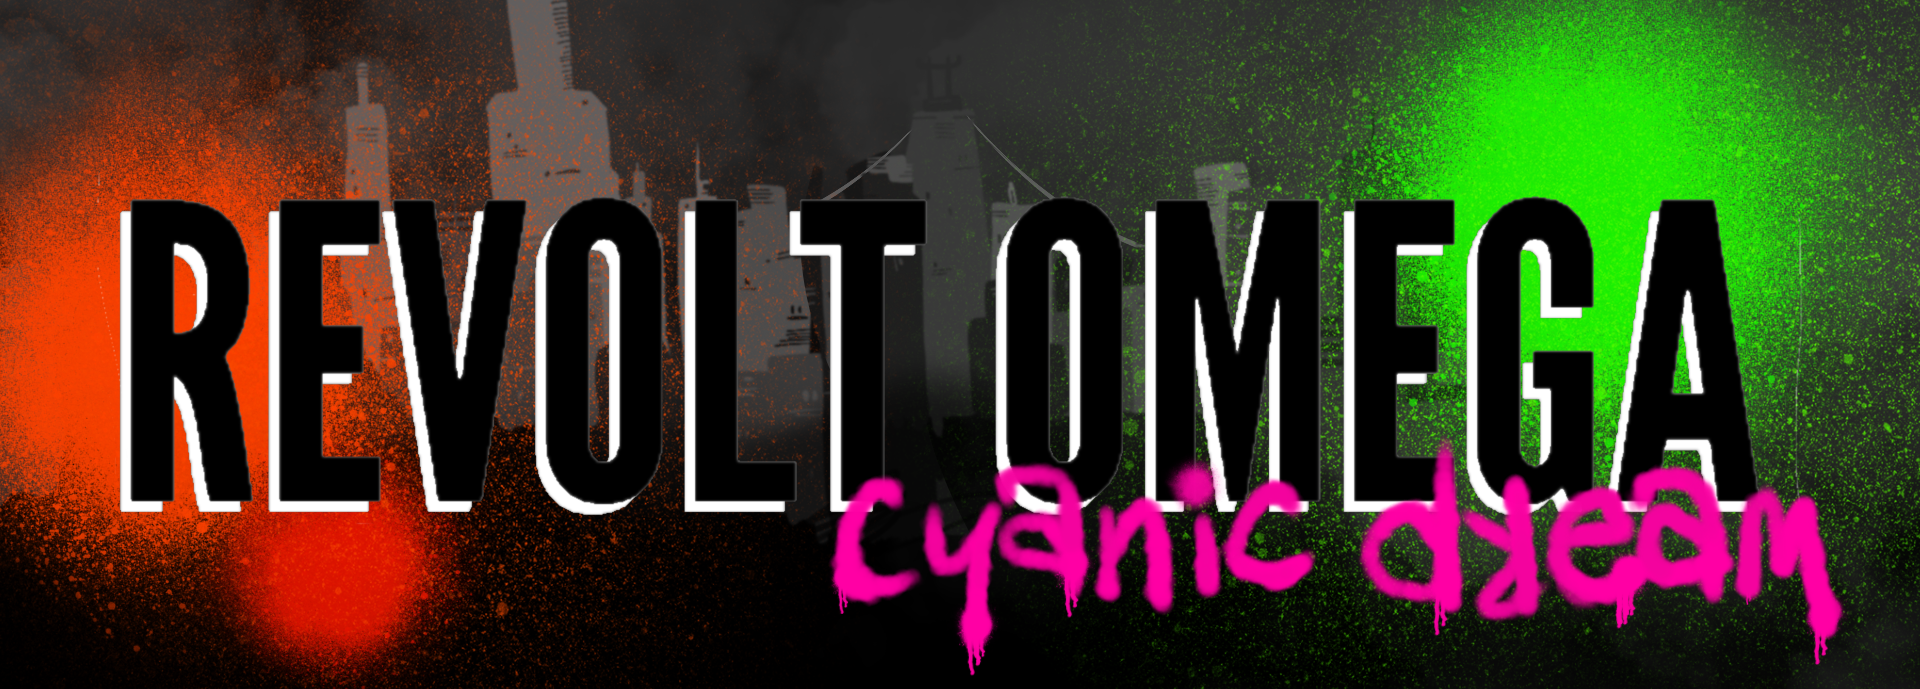 Revolt Omega: Cyanic Dream